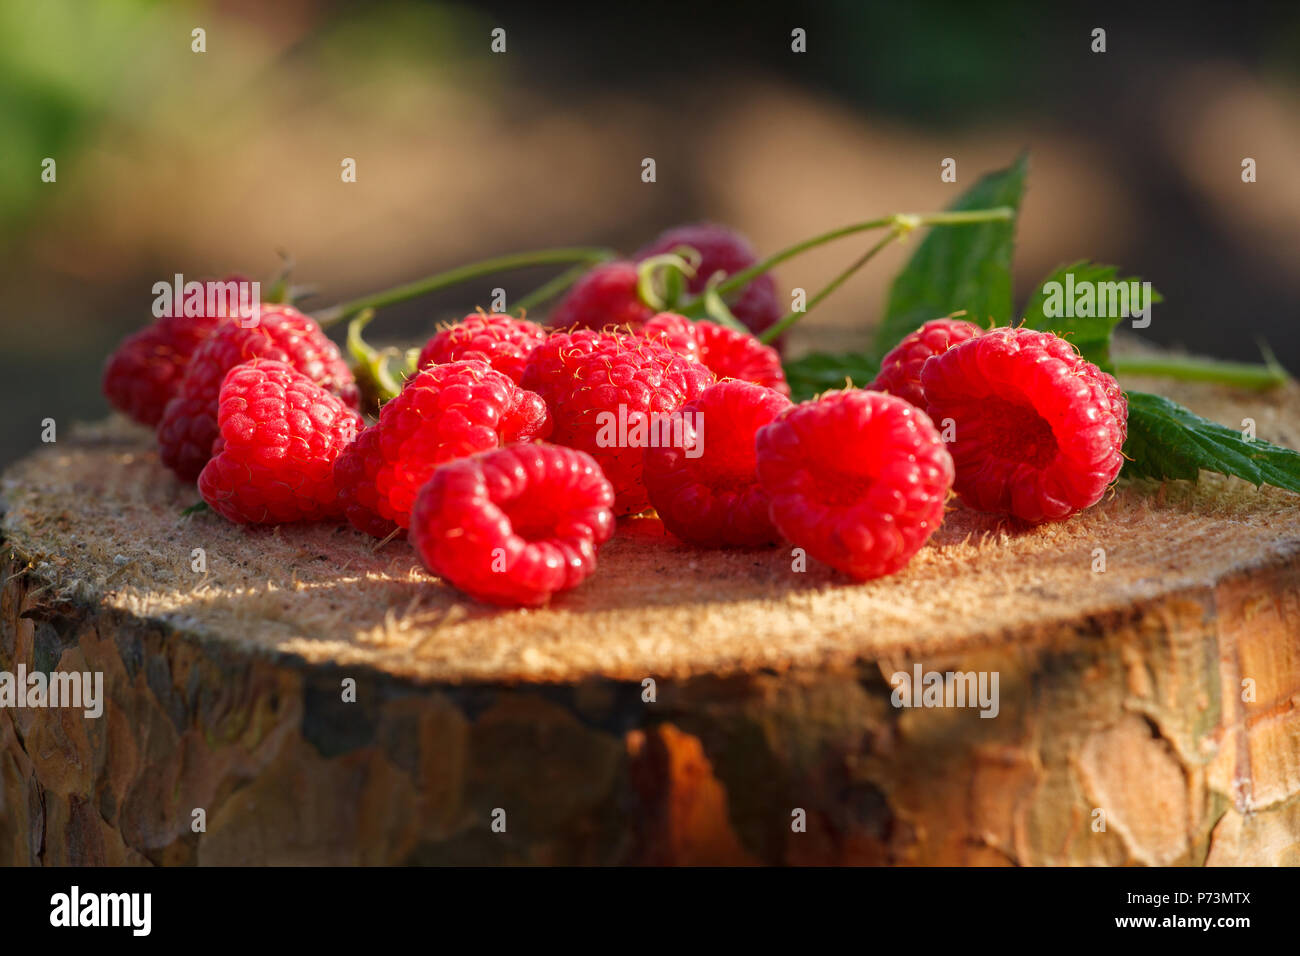 Les framboises rouges frais sur le moignon. Fruits frais biologiques. Close up. Banque D'Images